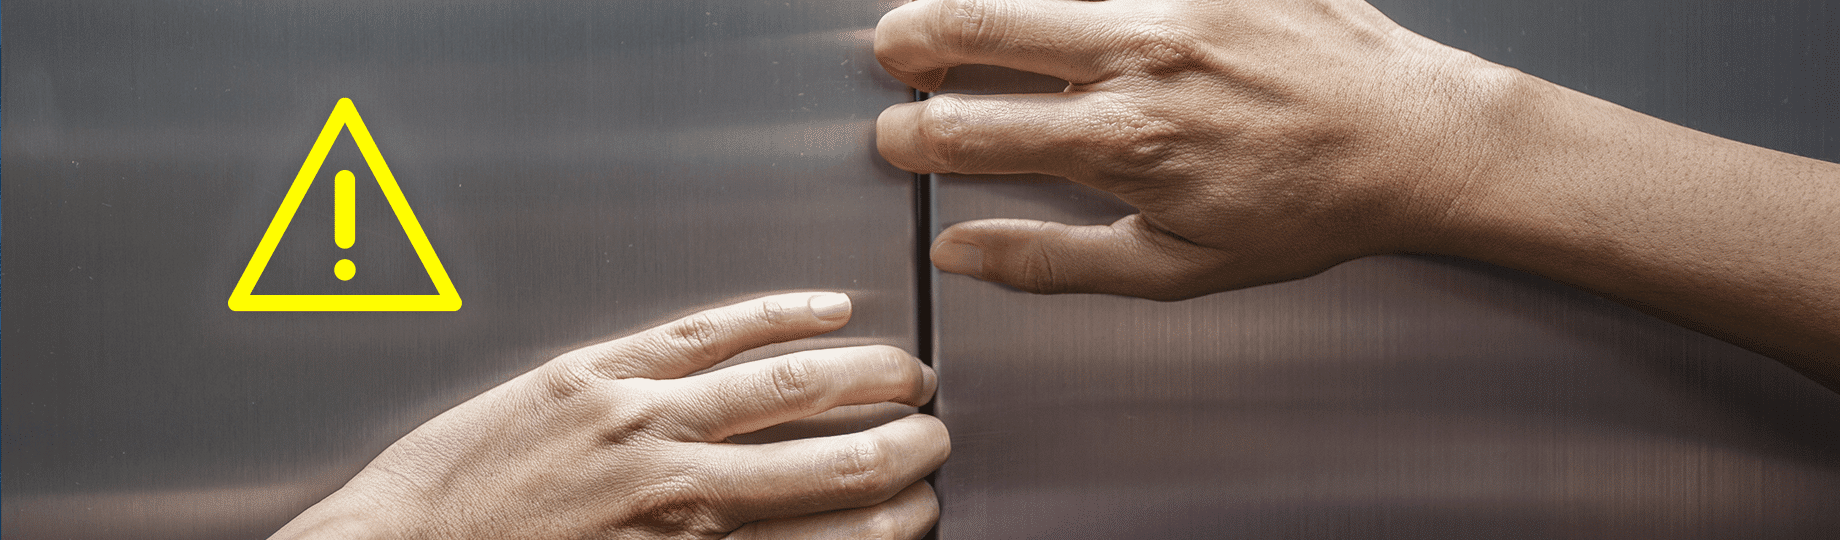 Veja 5 cuidados básicos para aumentar a vida útil do elevador